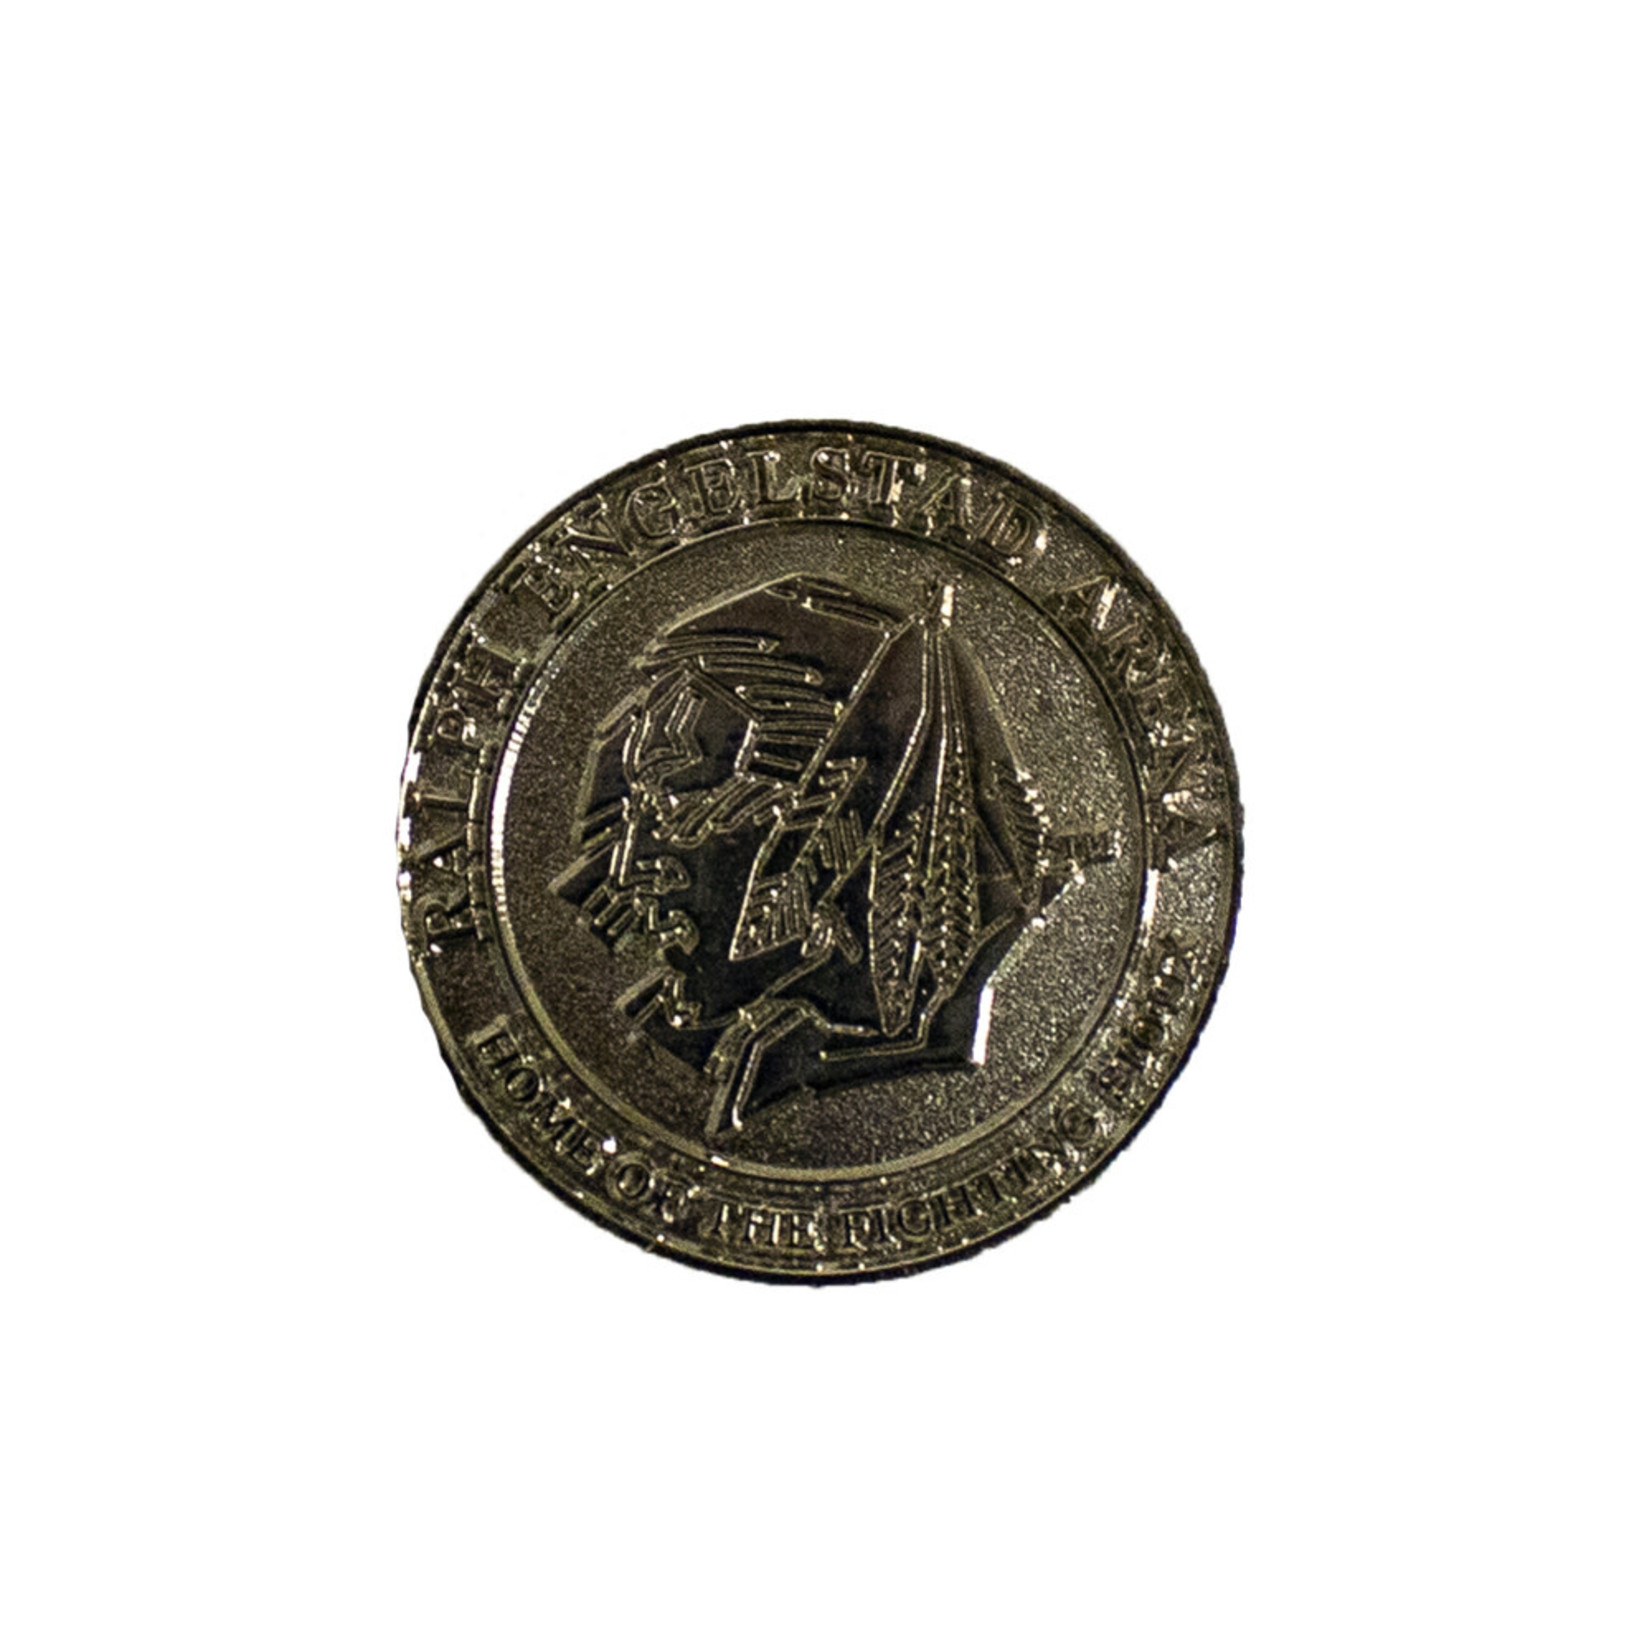 2008 World Curling Ralph Engelstad Arena Coin